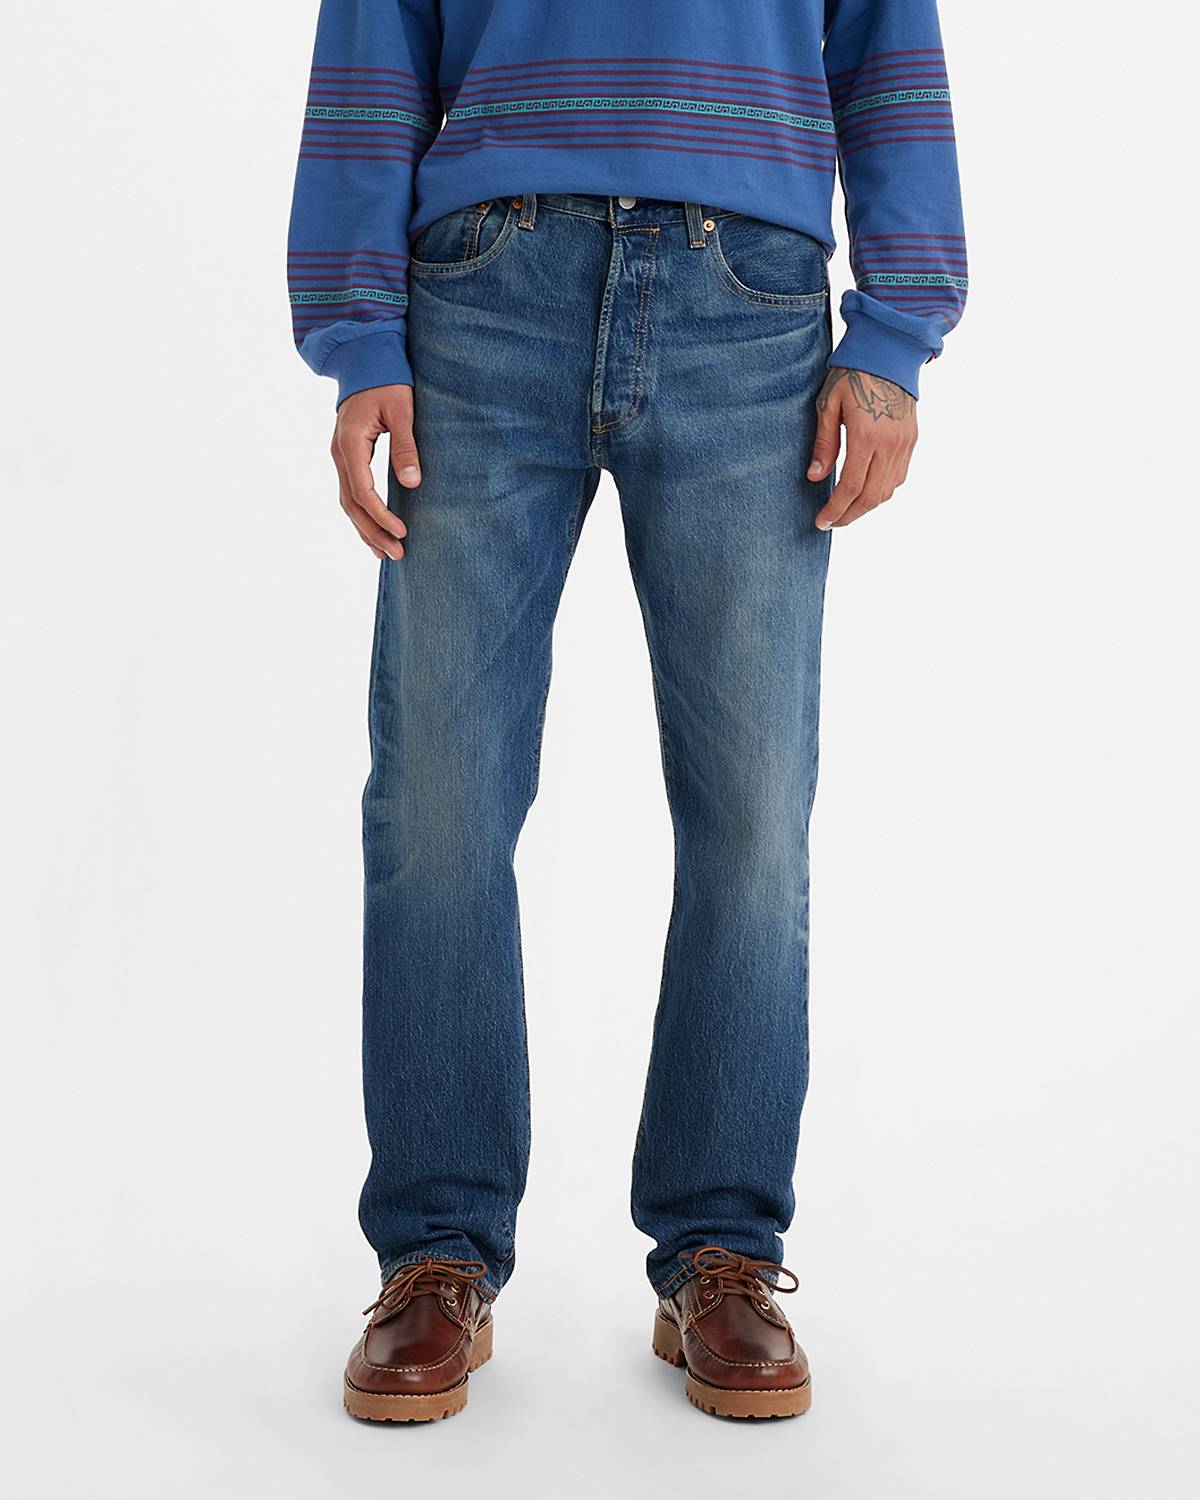 Model wearing 501® '93 jeans